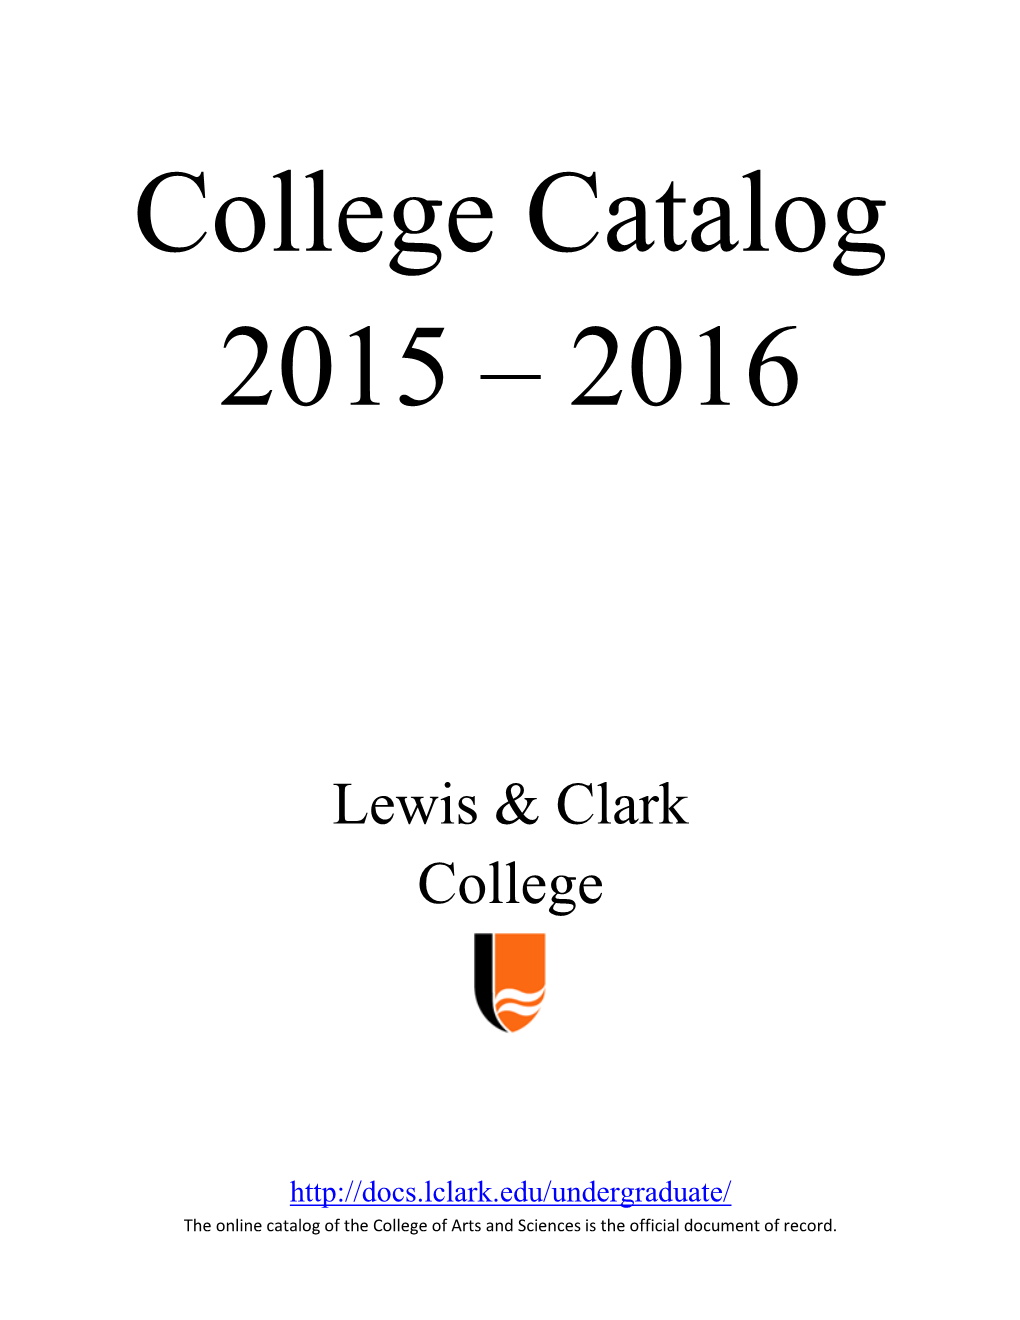 Lewis & Clark Catalog